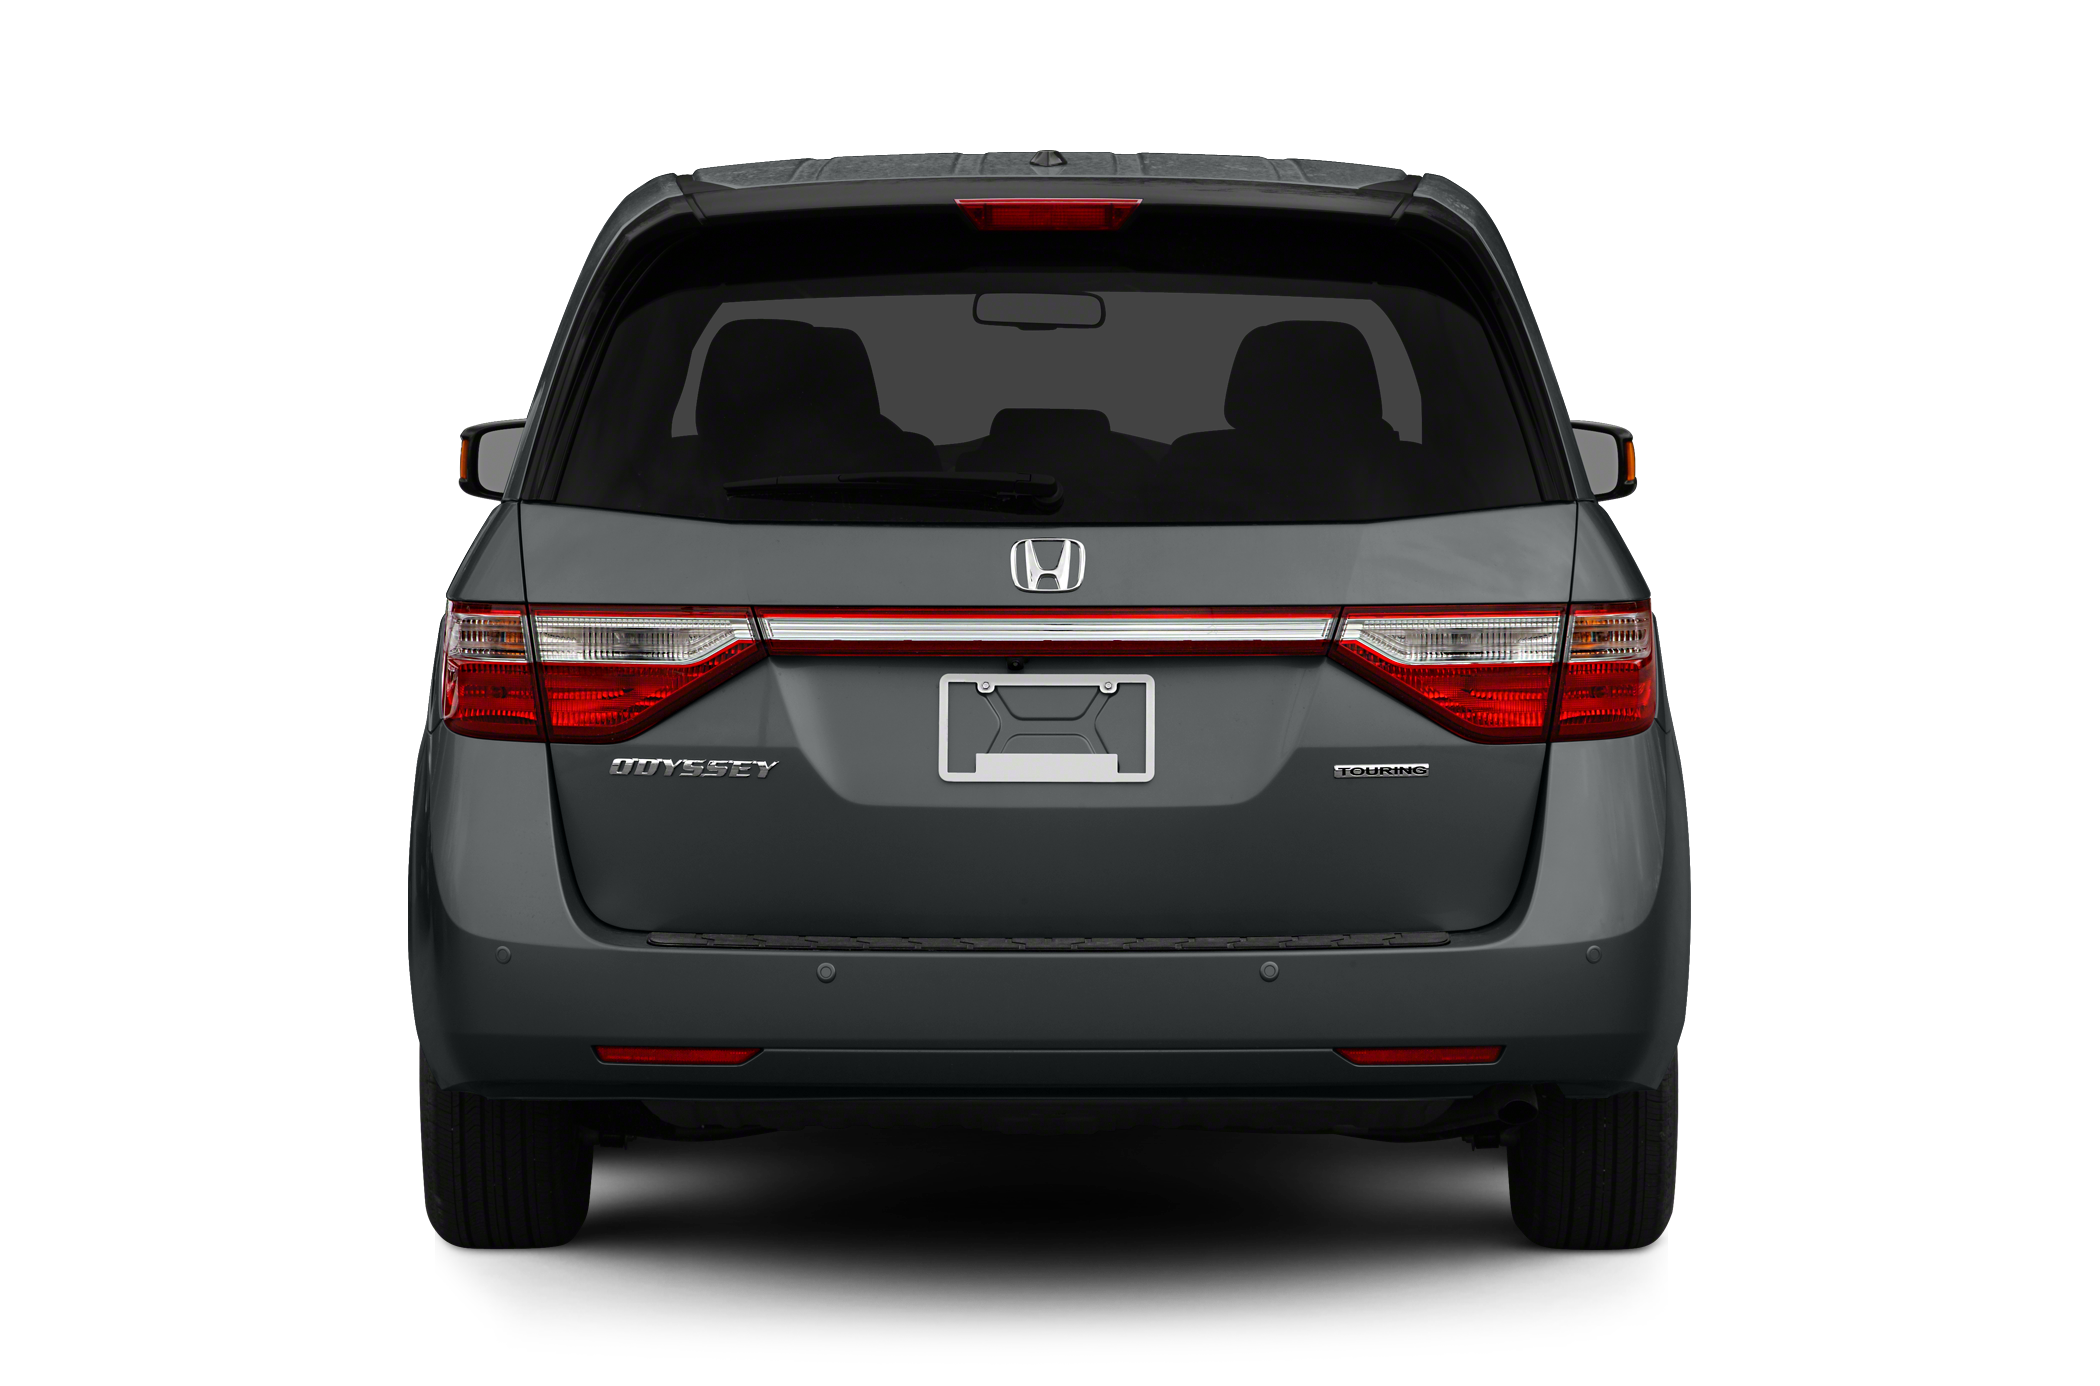 2012 Honda Odyssey